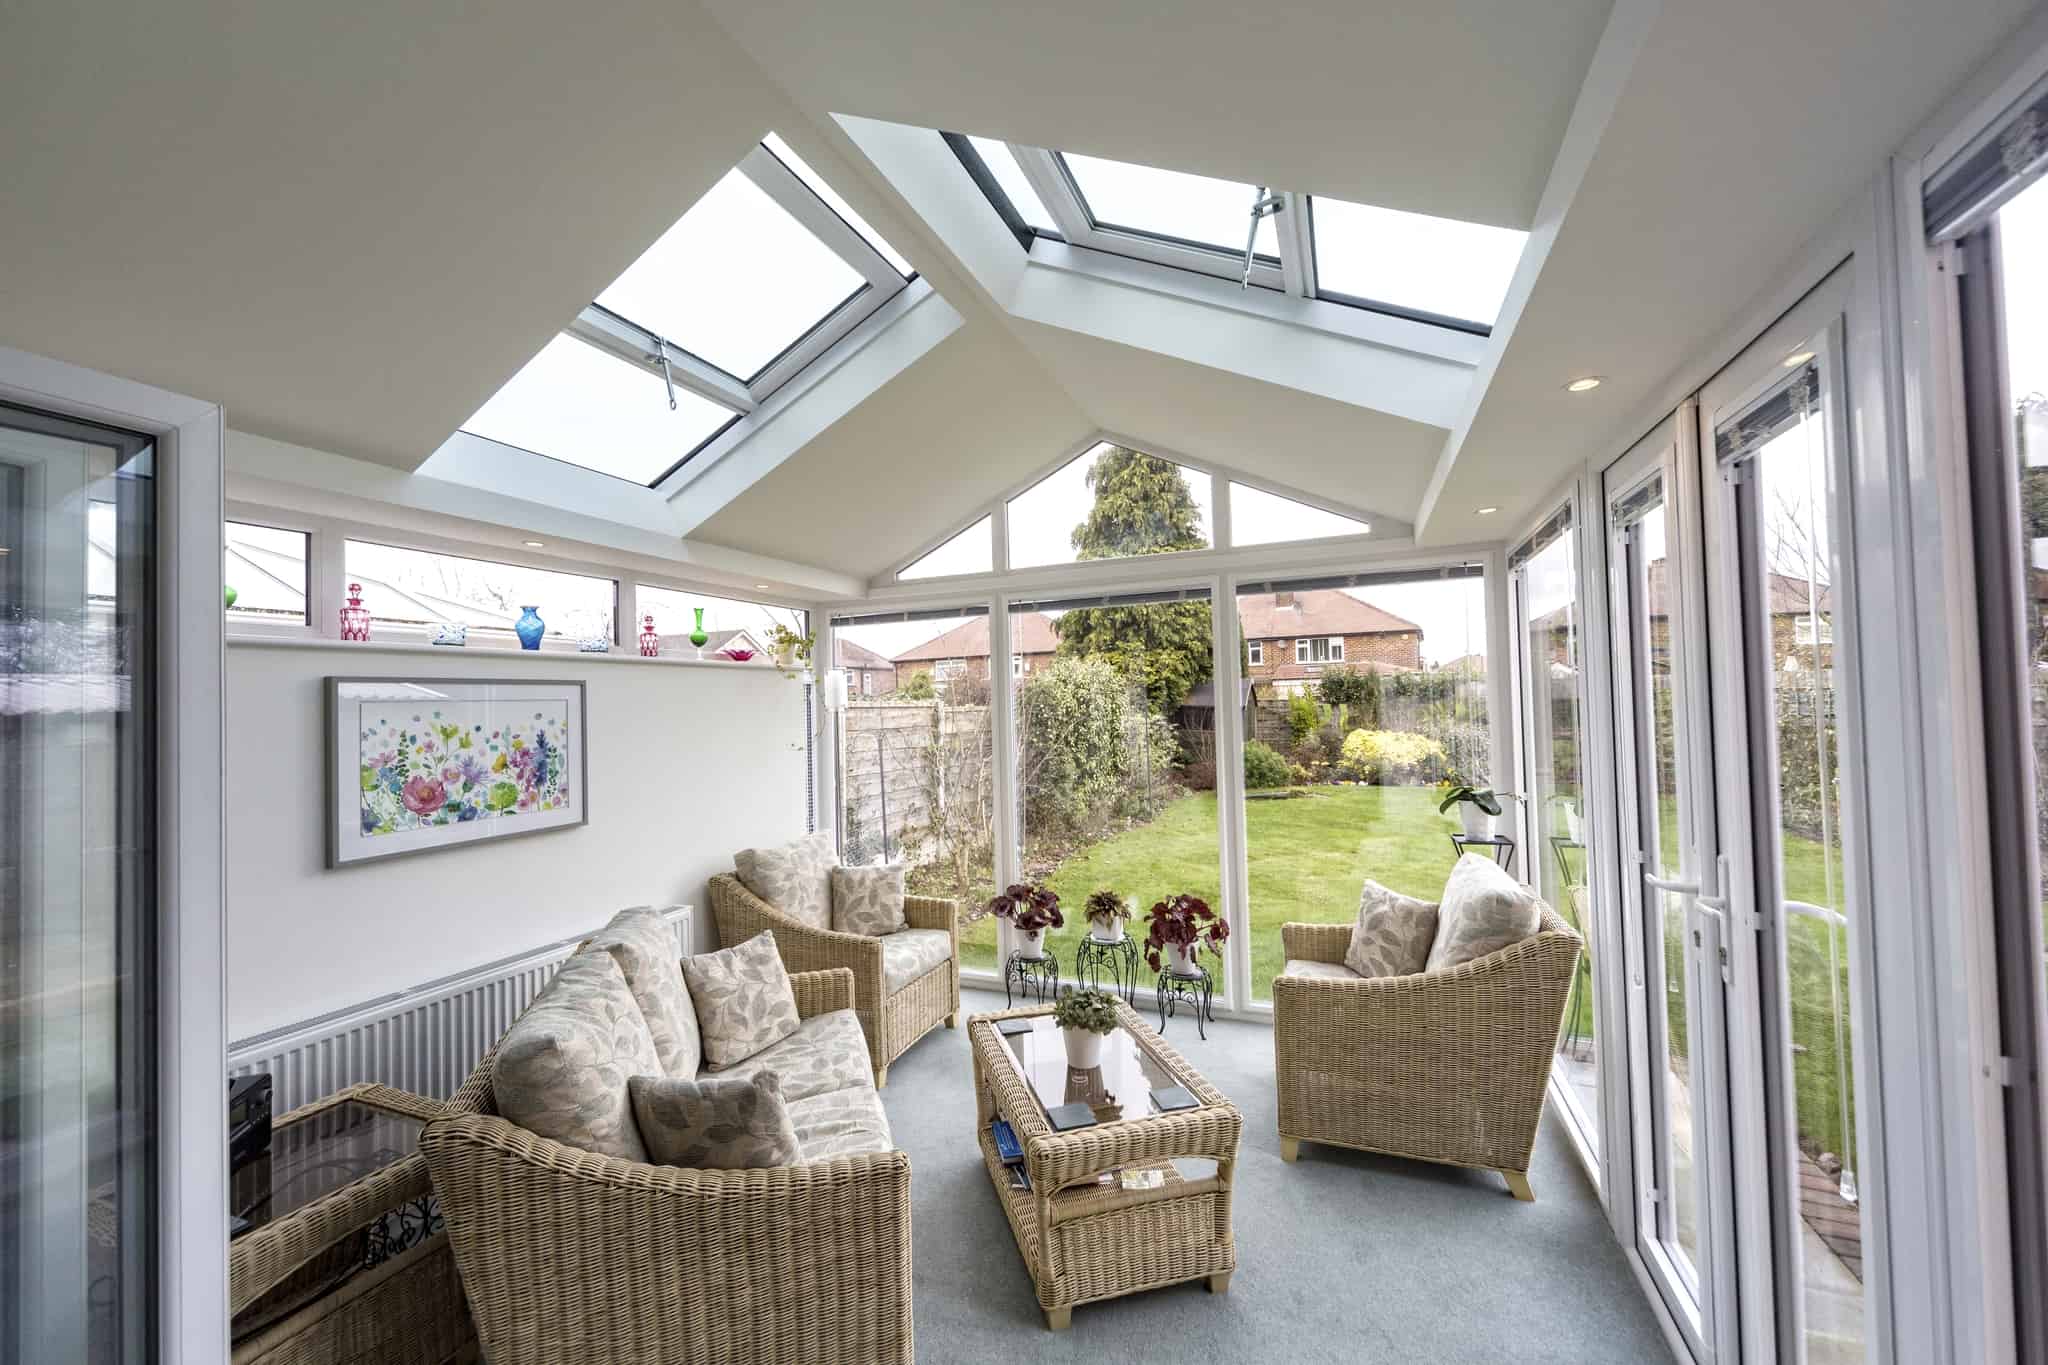 Sunburst conservatory roof